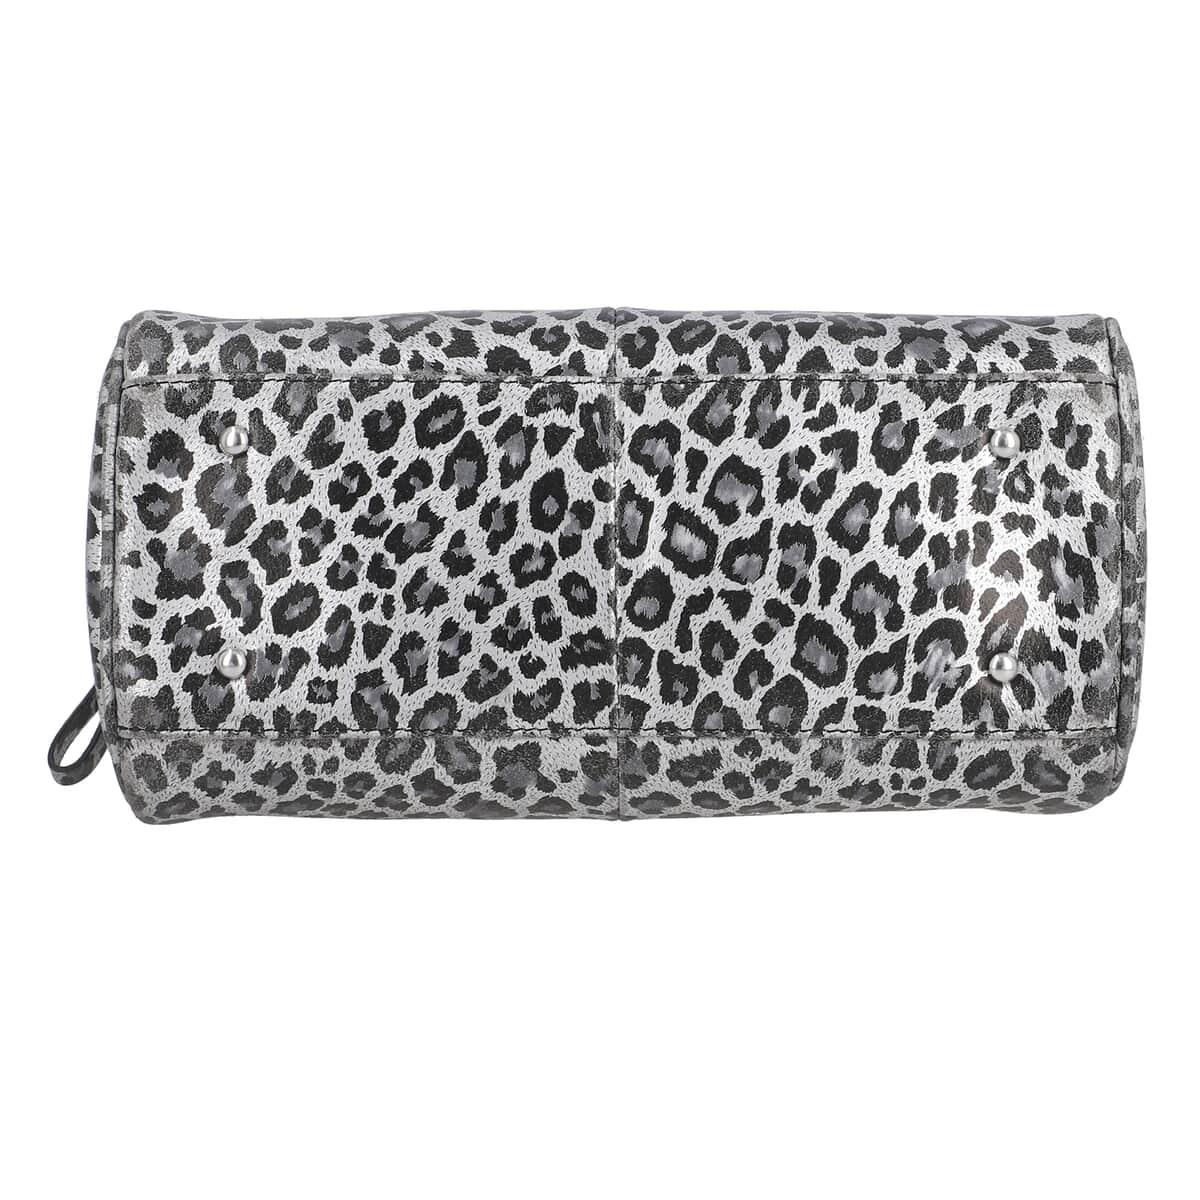 Gray and Black Leopard Foiled Pattern Genuine Leather Shoulder Bag with Adjustable Strap image number 5